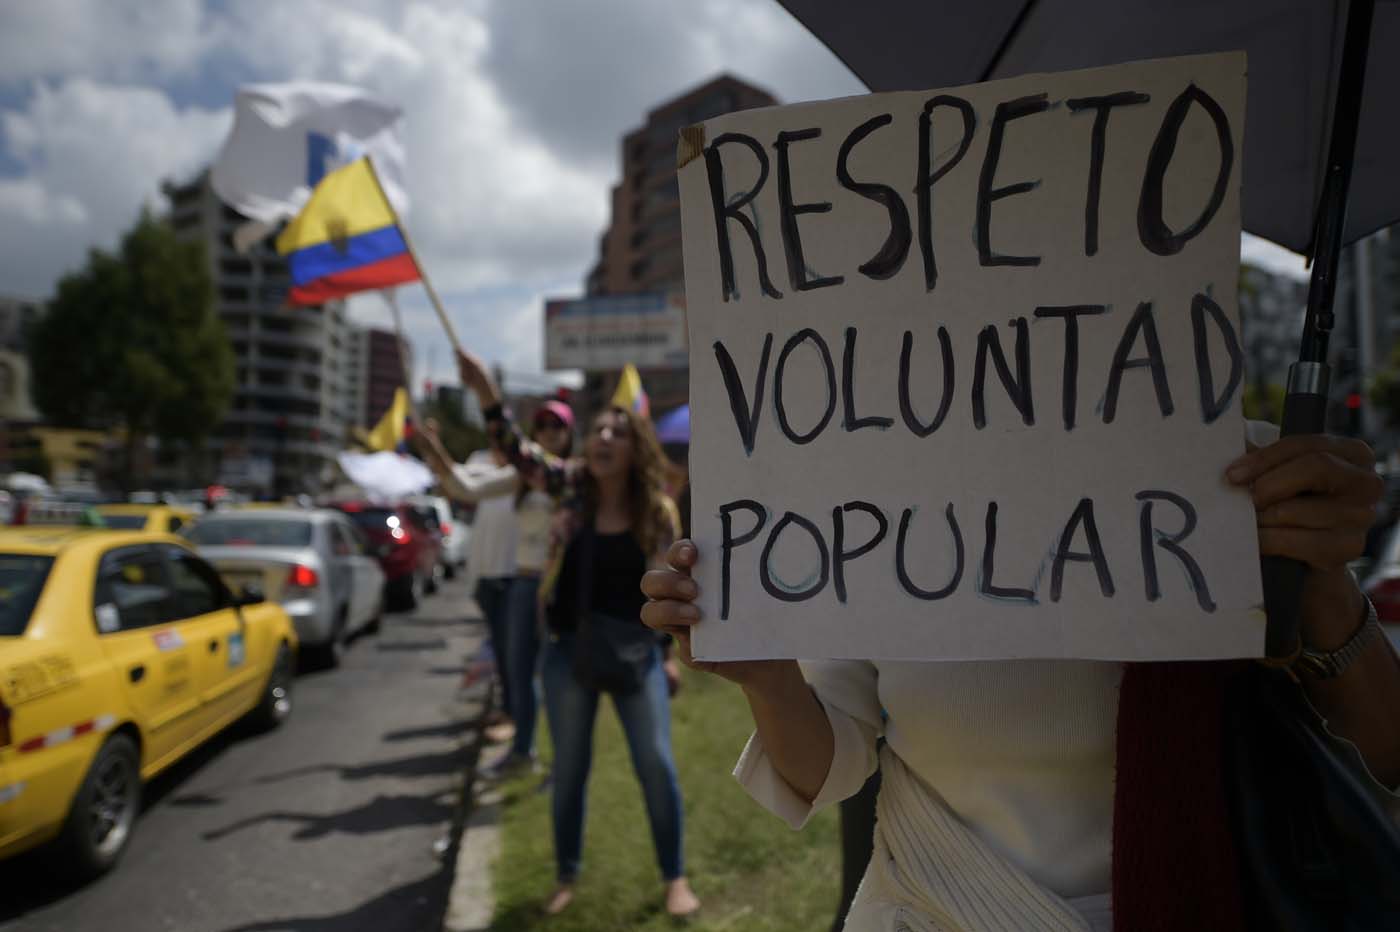 Por qué en Ecuador la usurpación electoral es más difícil que en Venezuela